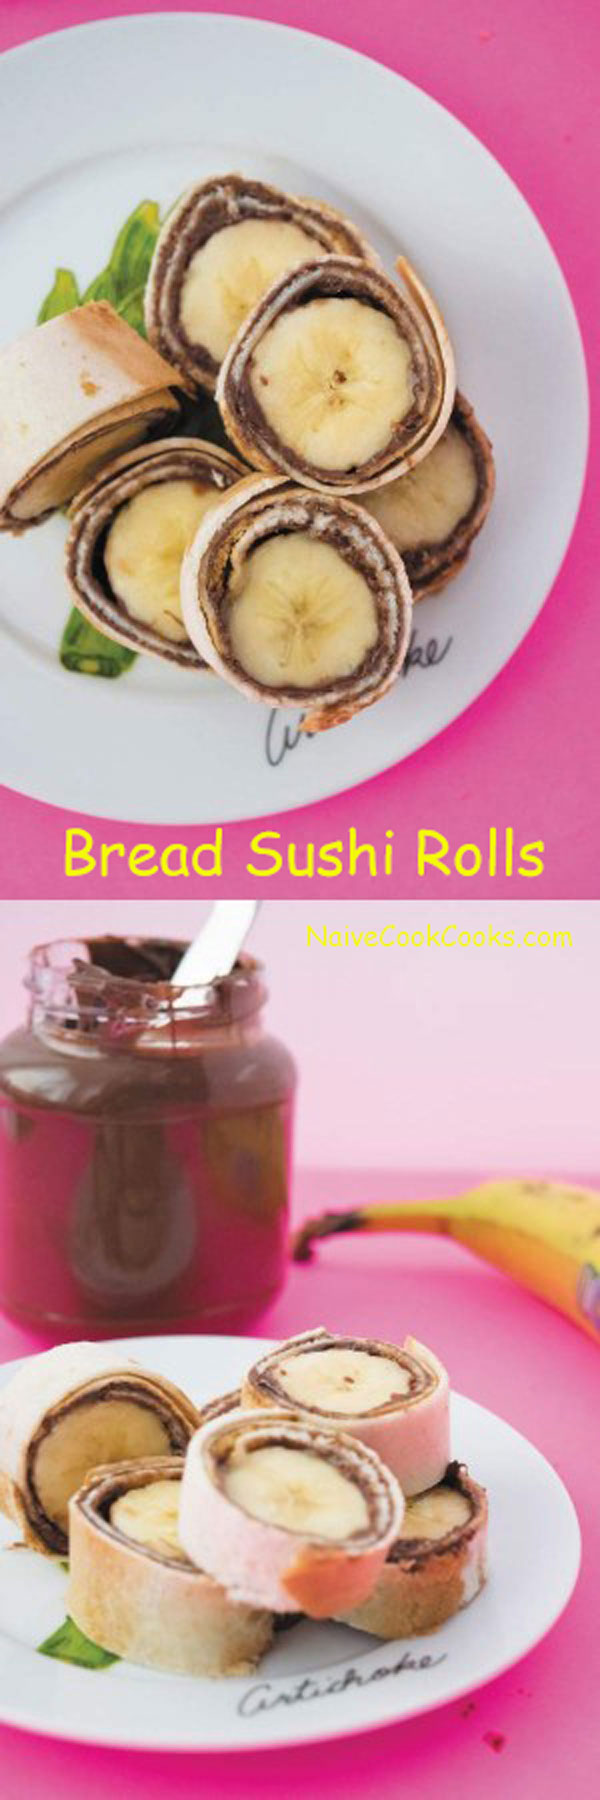 bread sushi rolls